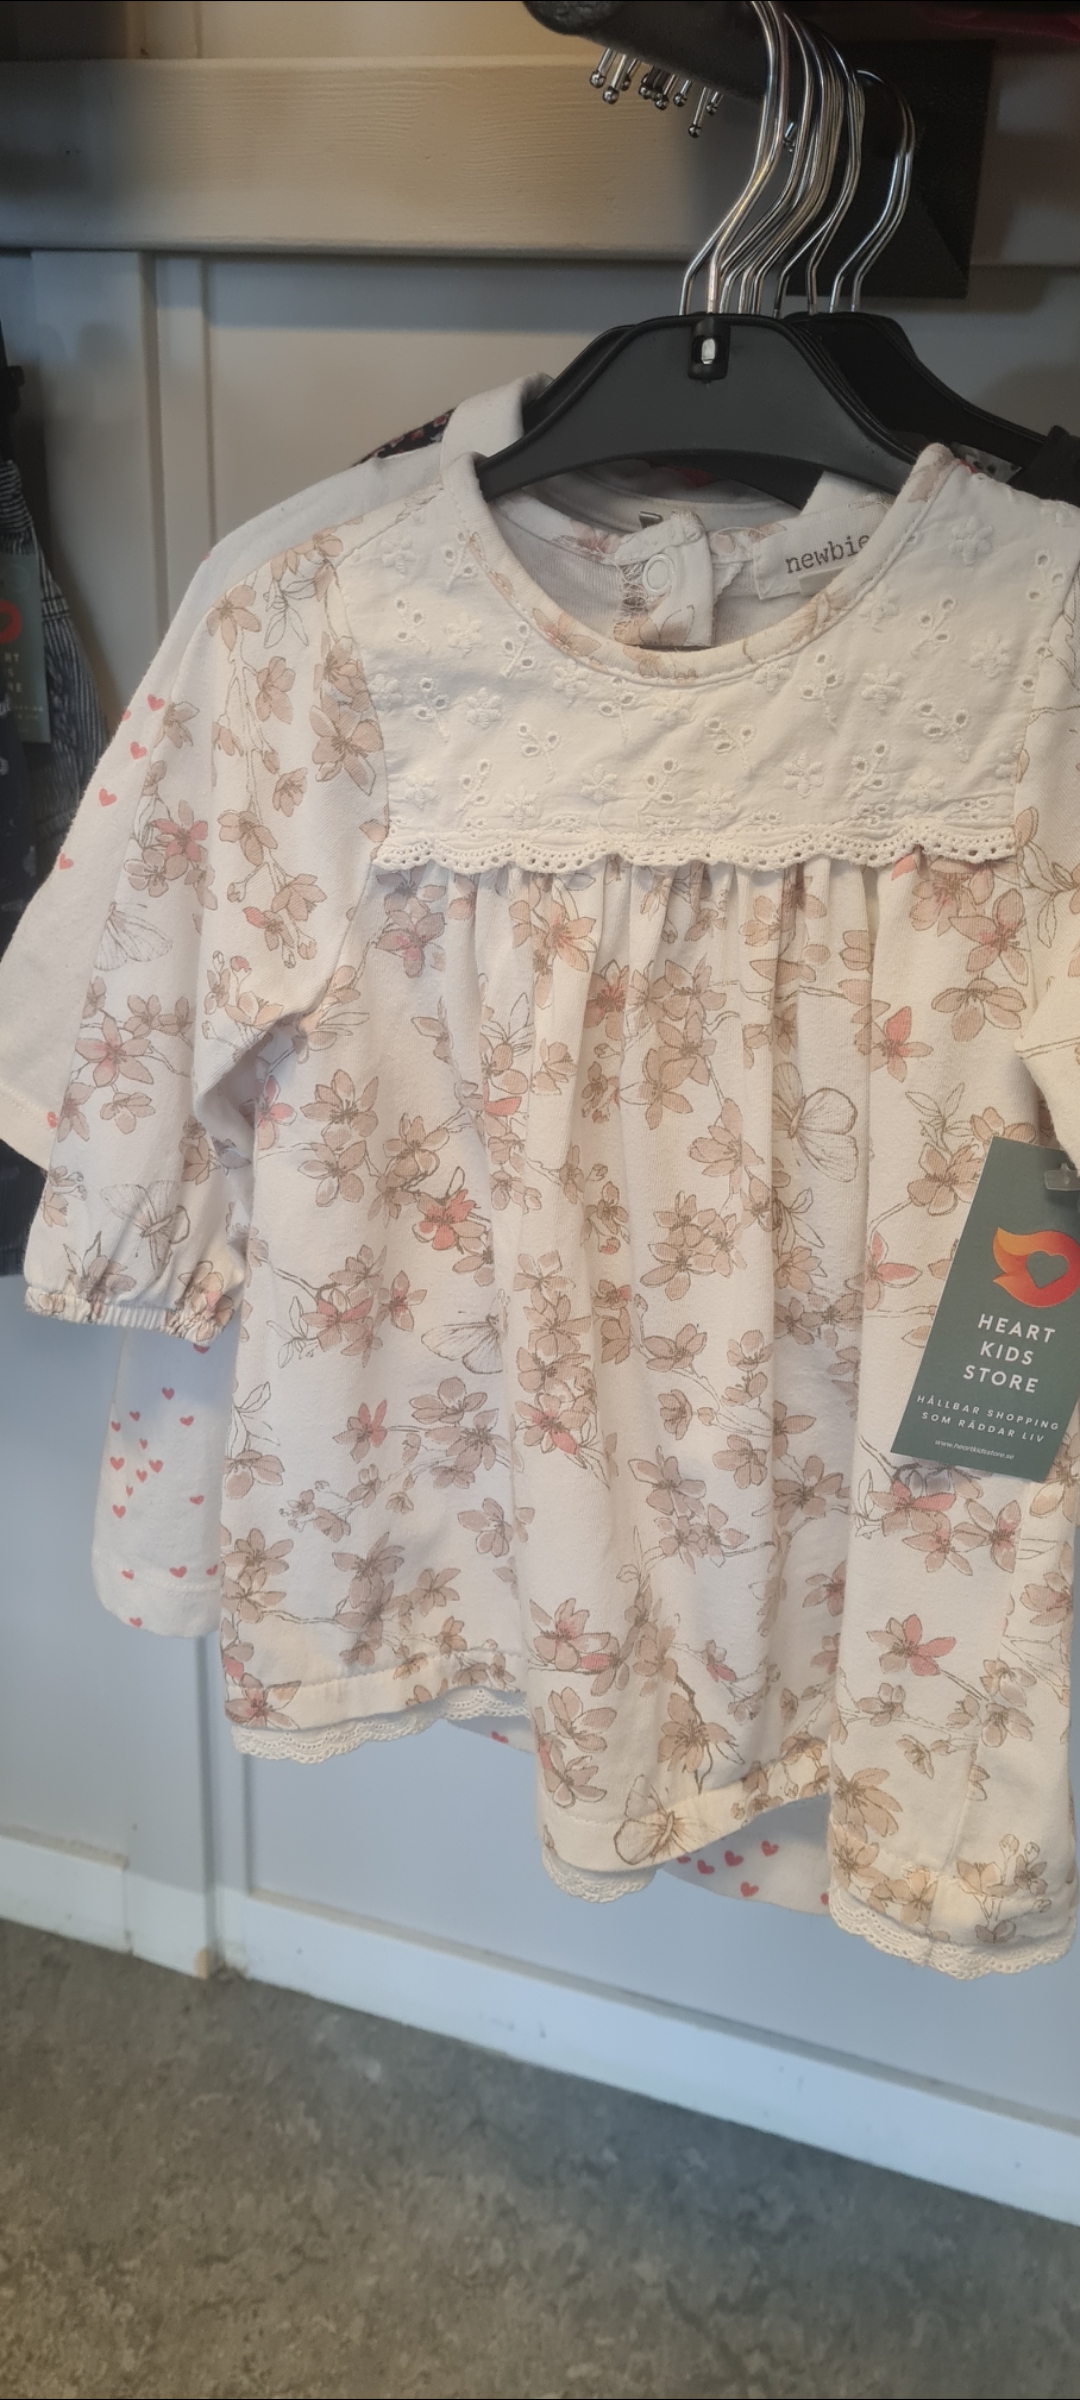 Blommig baby klänning med spetskrage från varumärket Heart kids store